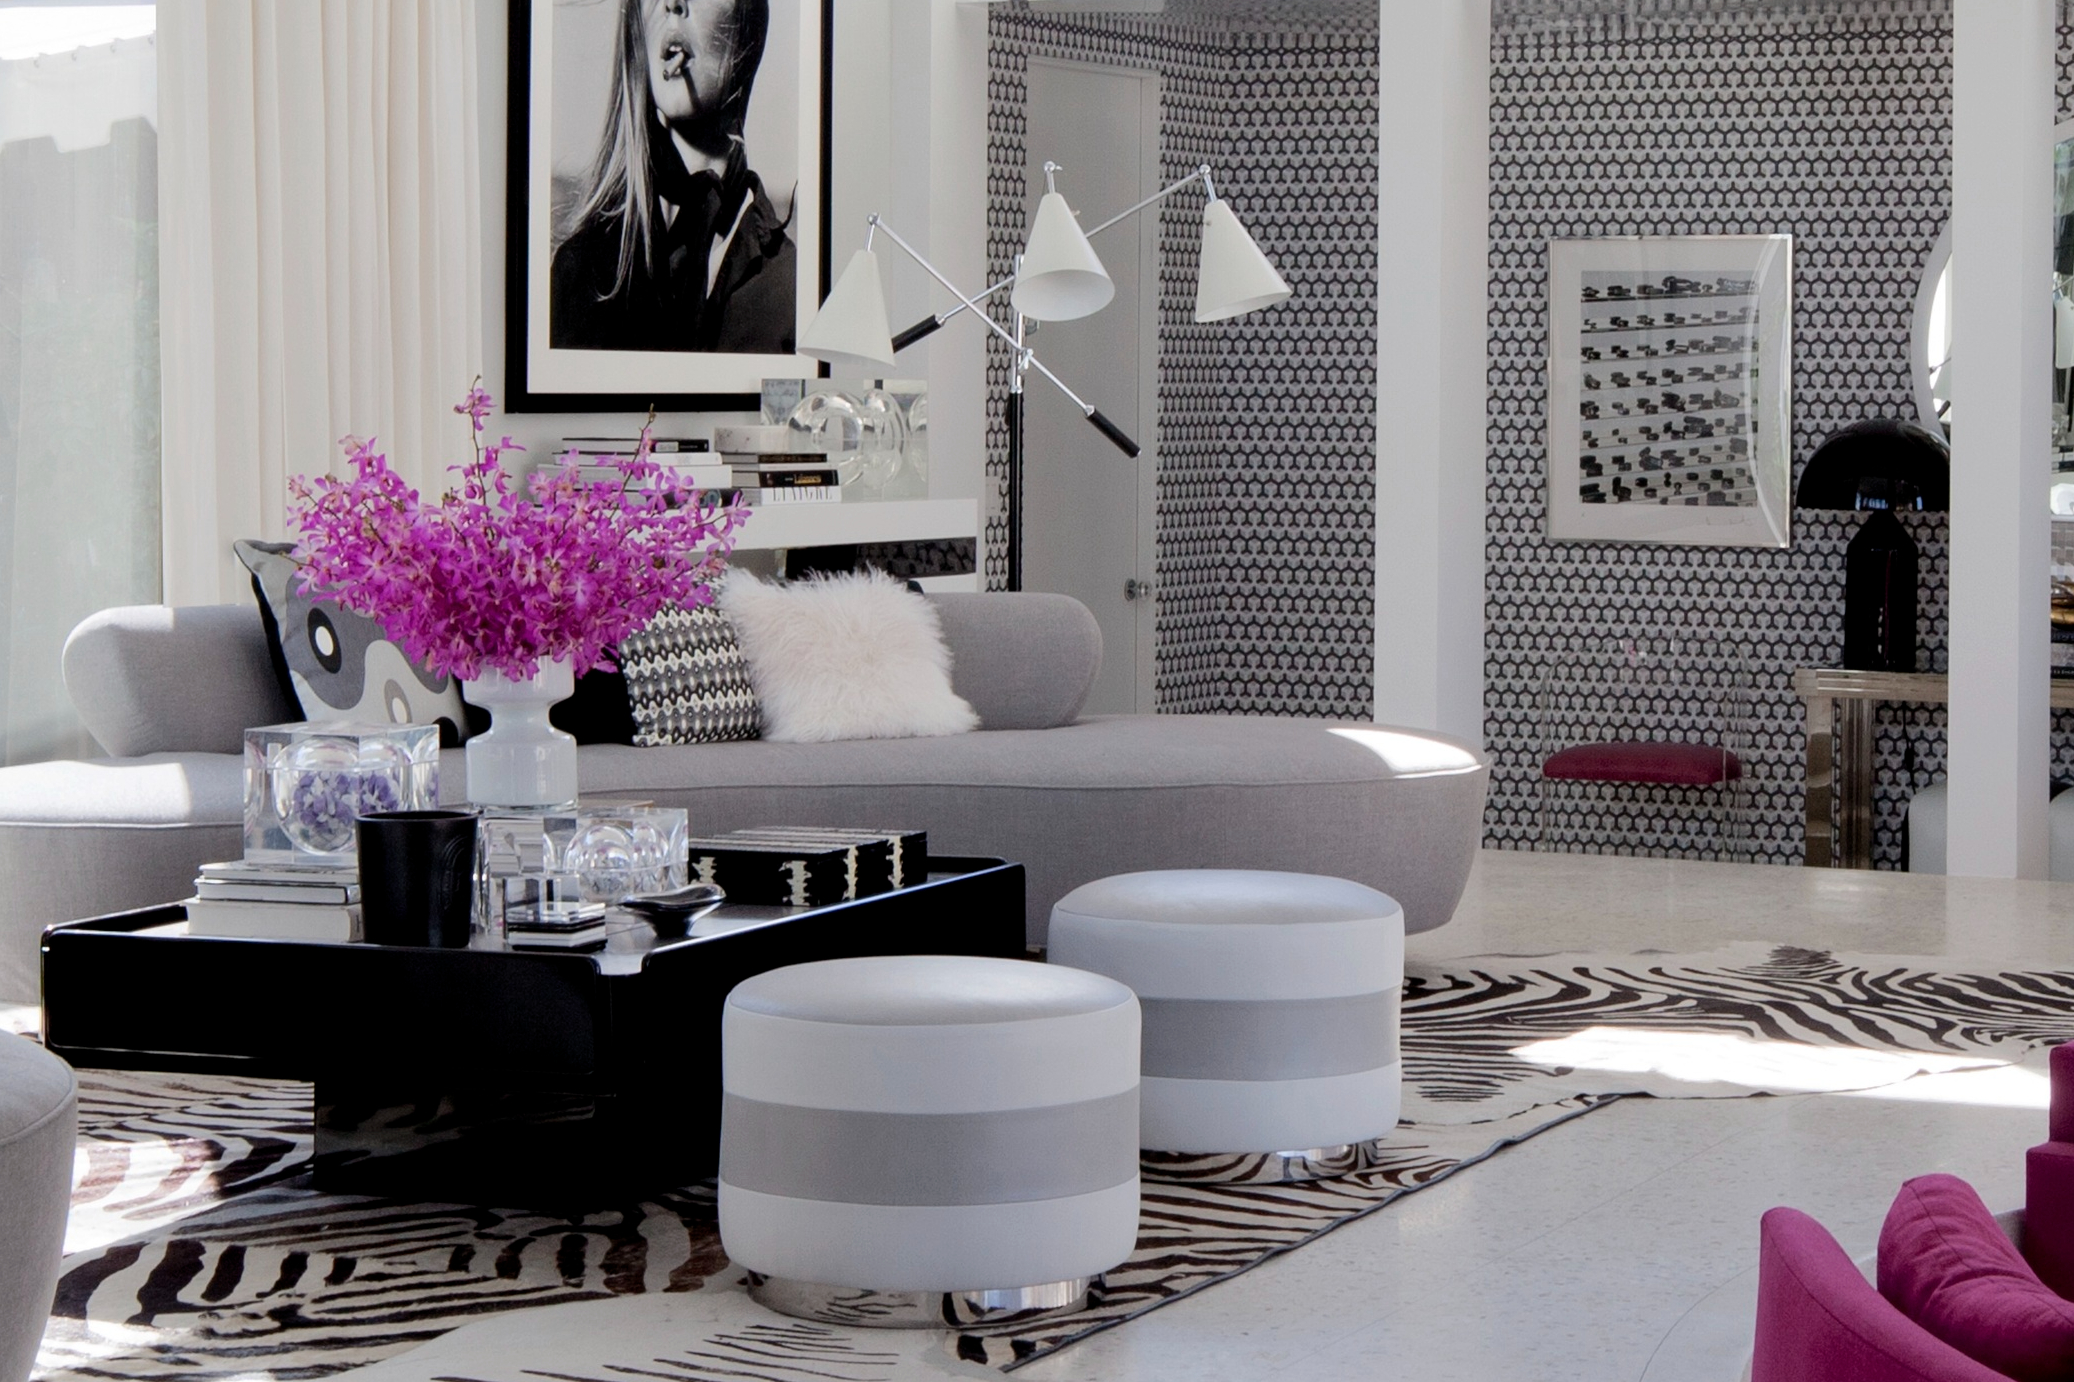 斑马皮和鲜明对比黑白挂画及几何图案壁纸，搭配灰色沙发、亮丽色彩家具家饰，让空间宛如一件普普艺术作品。